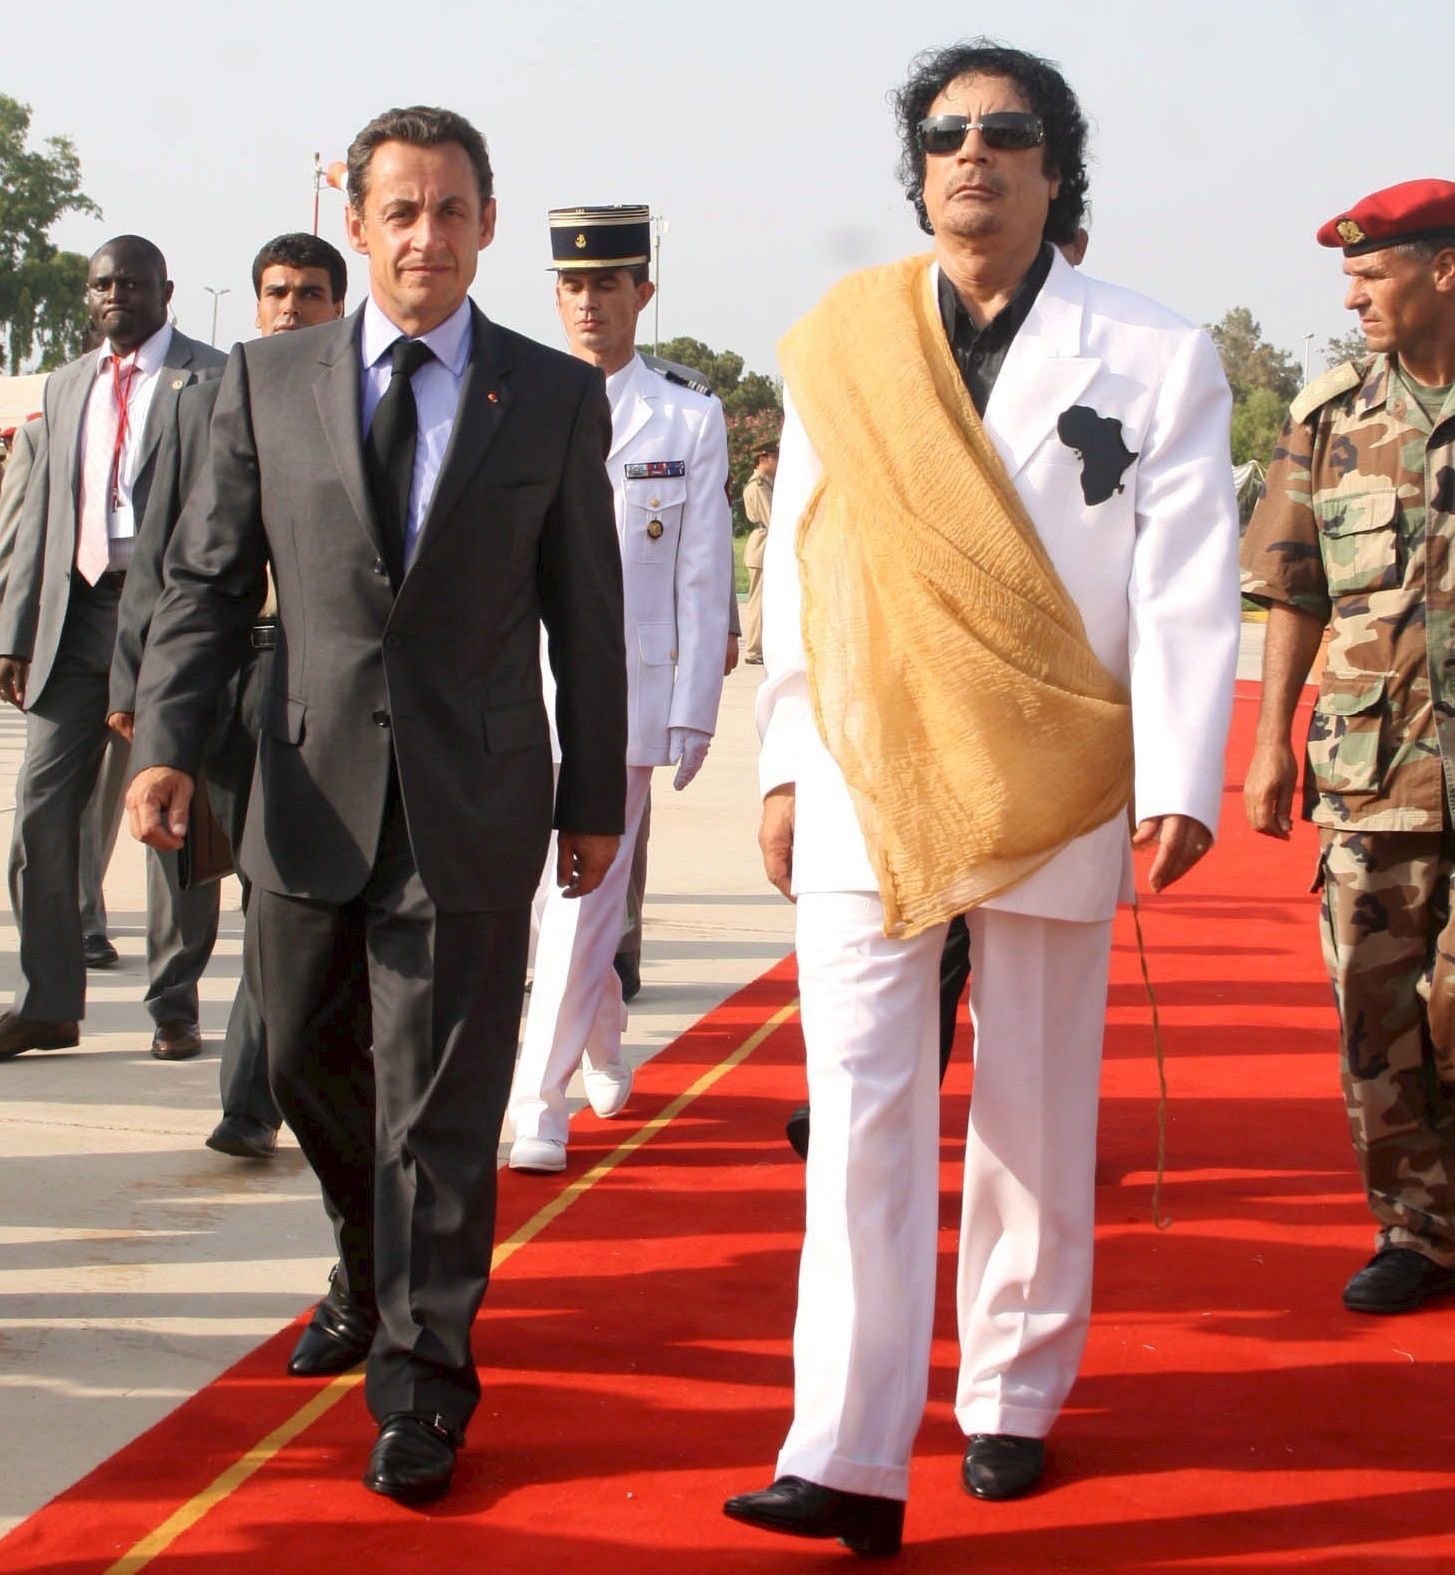 Nicolas Sarkozy fermato per un presunto finanziamento illecito del rais libico Gheddafi